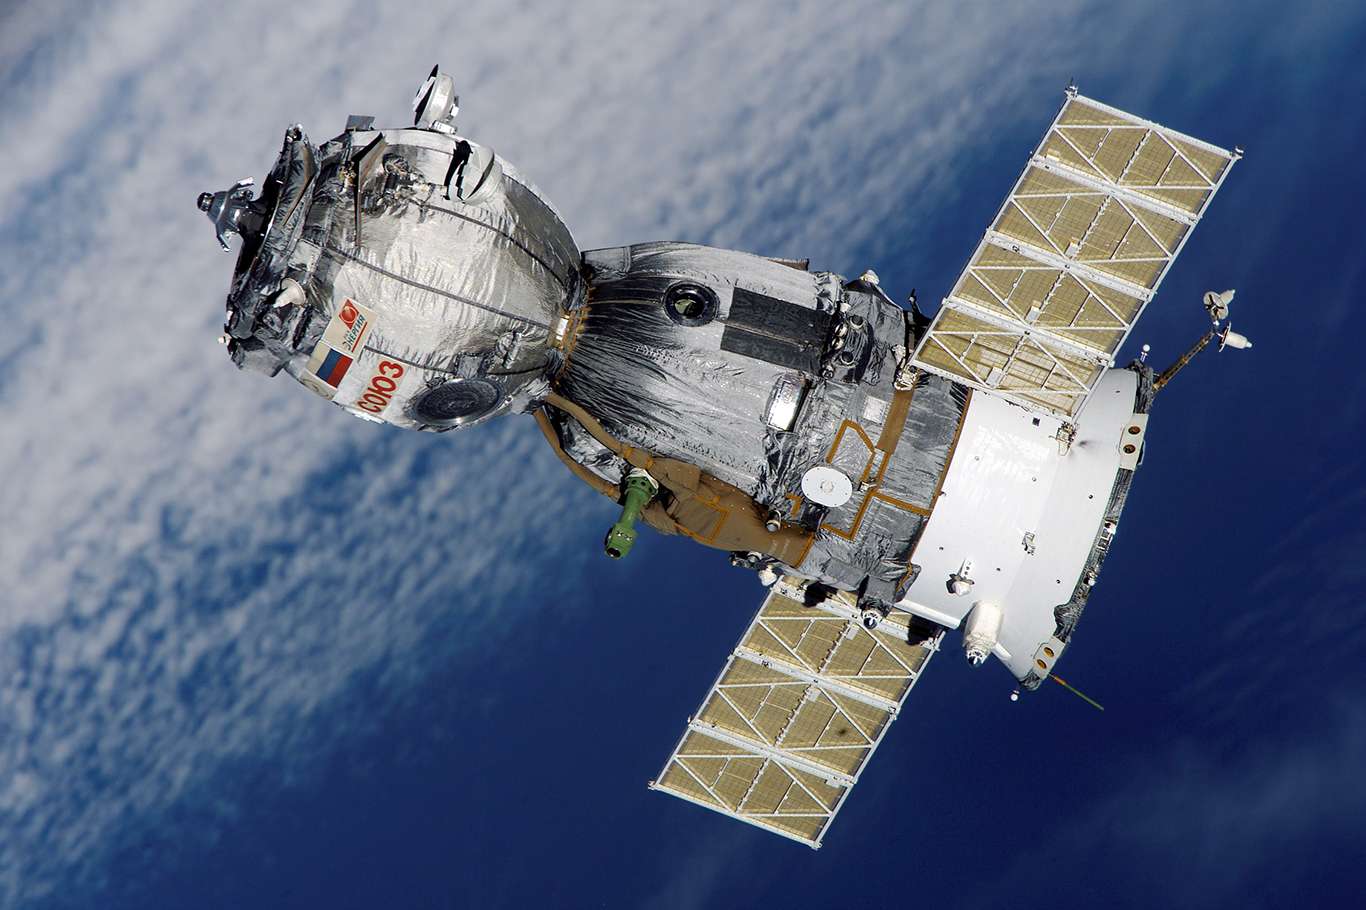 Uluslararası Uzay İstasyonunda görev yapan Soyuz MS-16 kapsülü dünyaya döndü